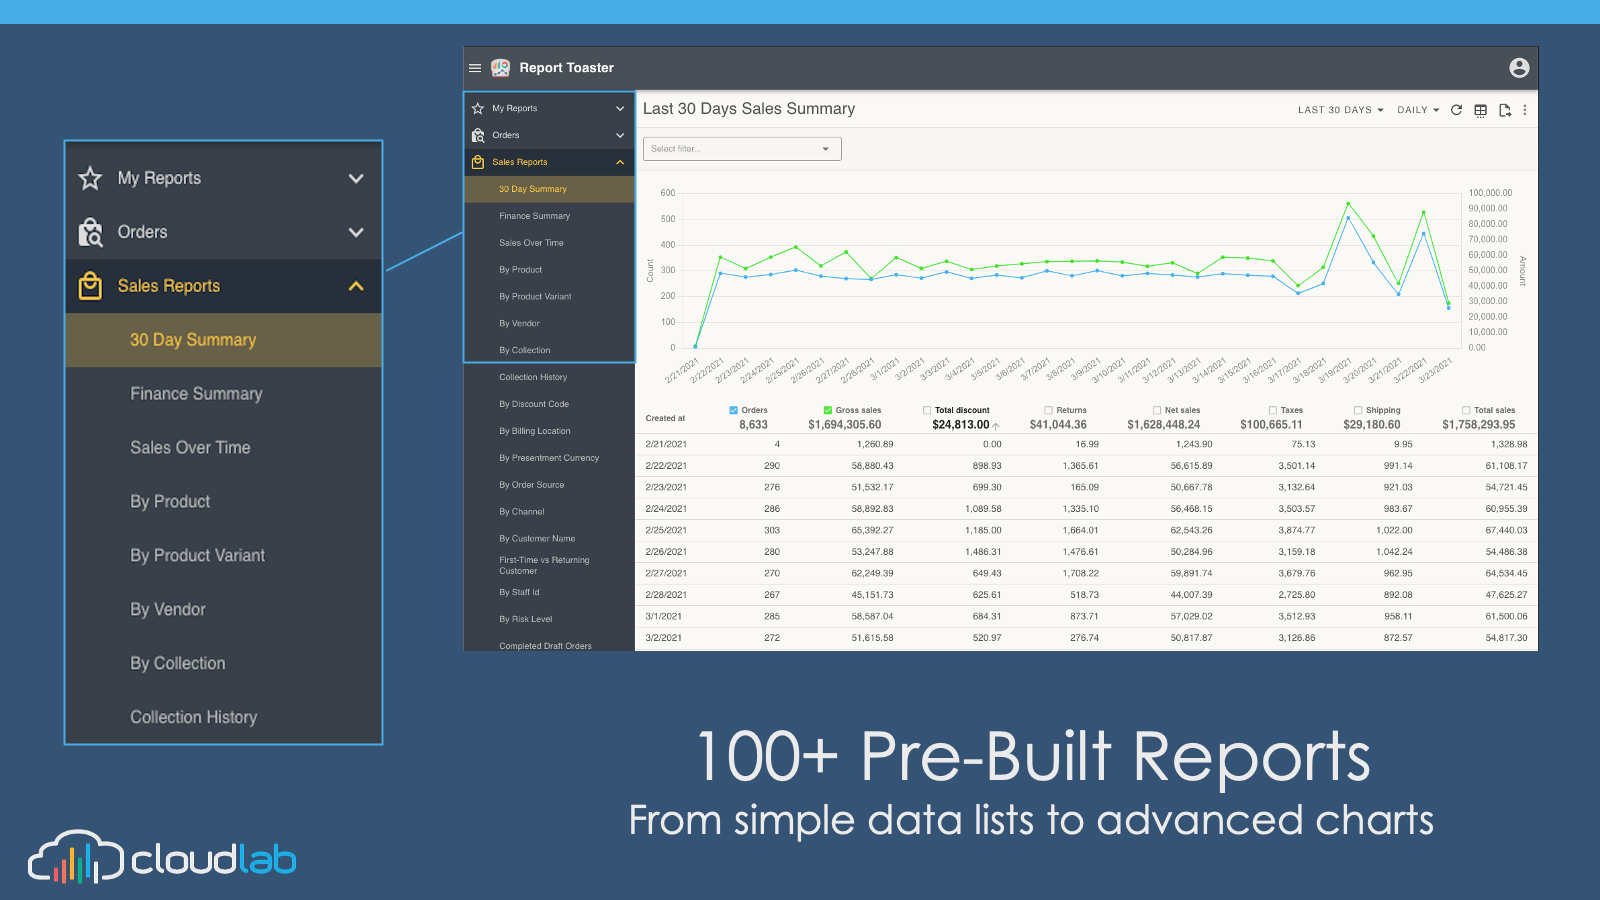 100+ Pre-built reports, from simple lists to advanced charts